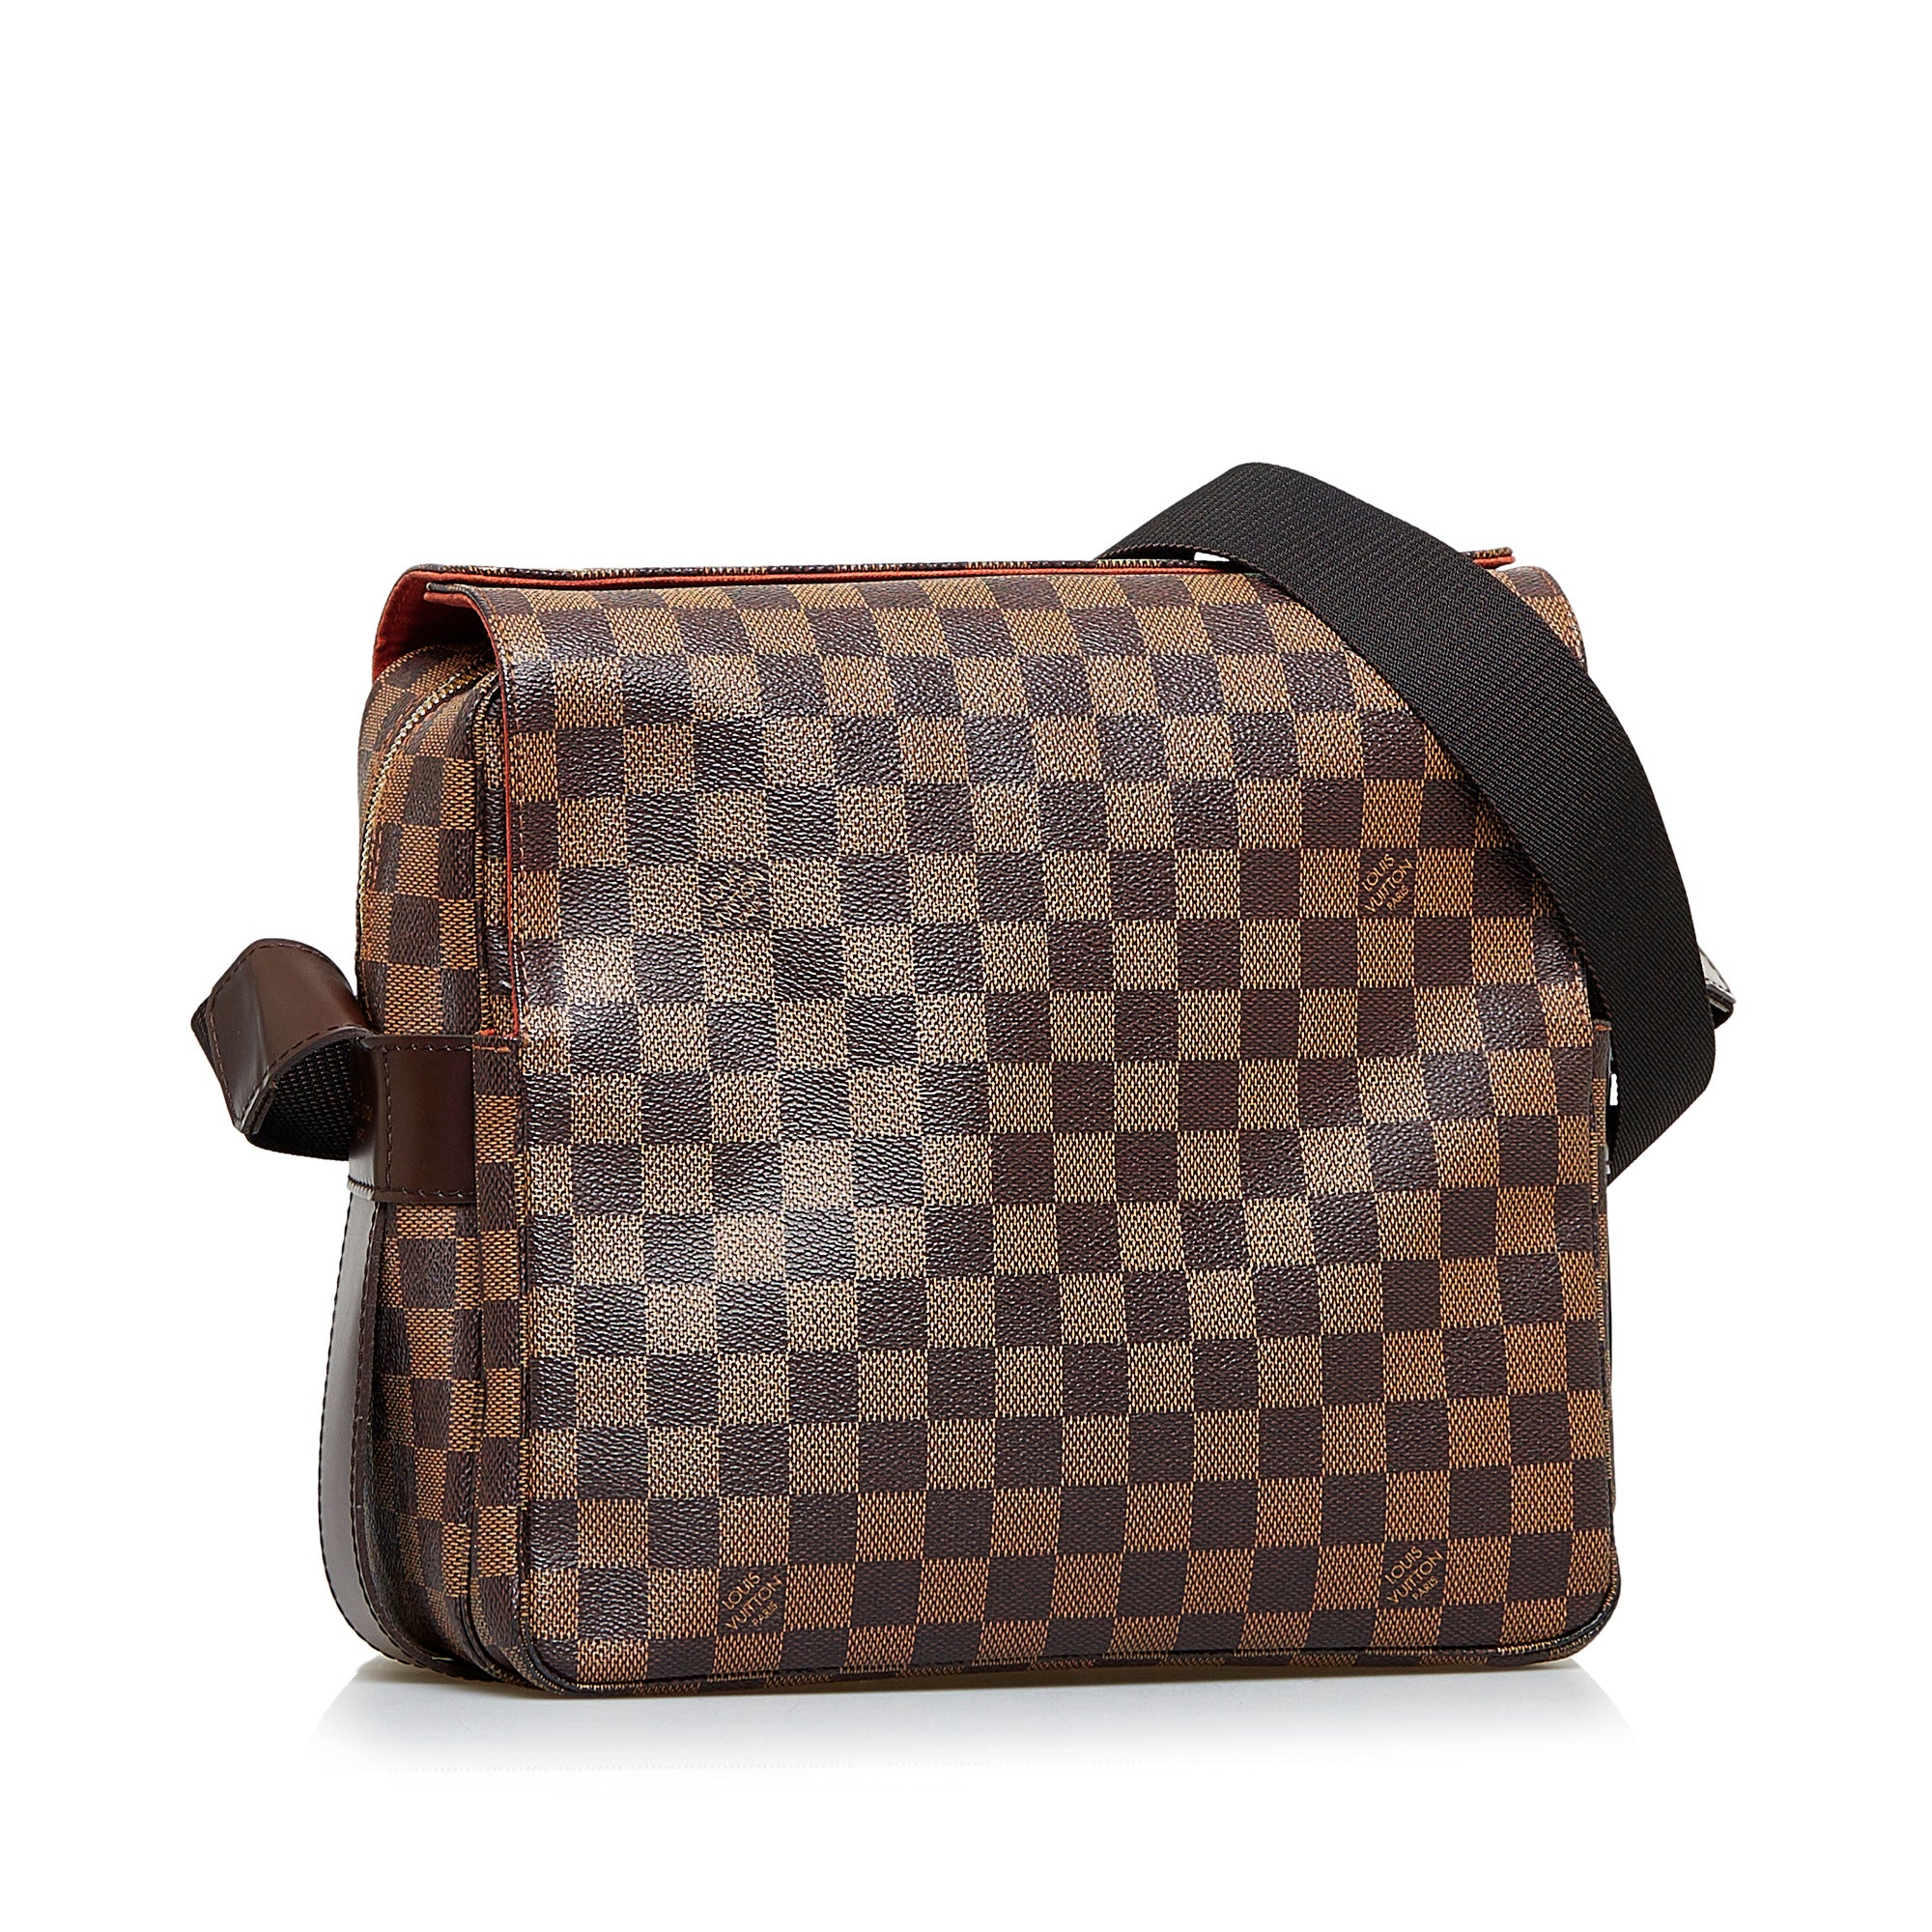 Louis Vuitton Brown Canvas Damier Ebene Naviglio Crossbody Bag